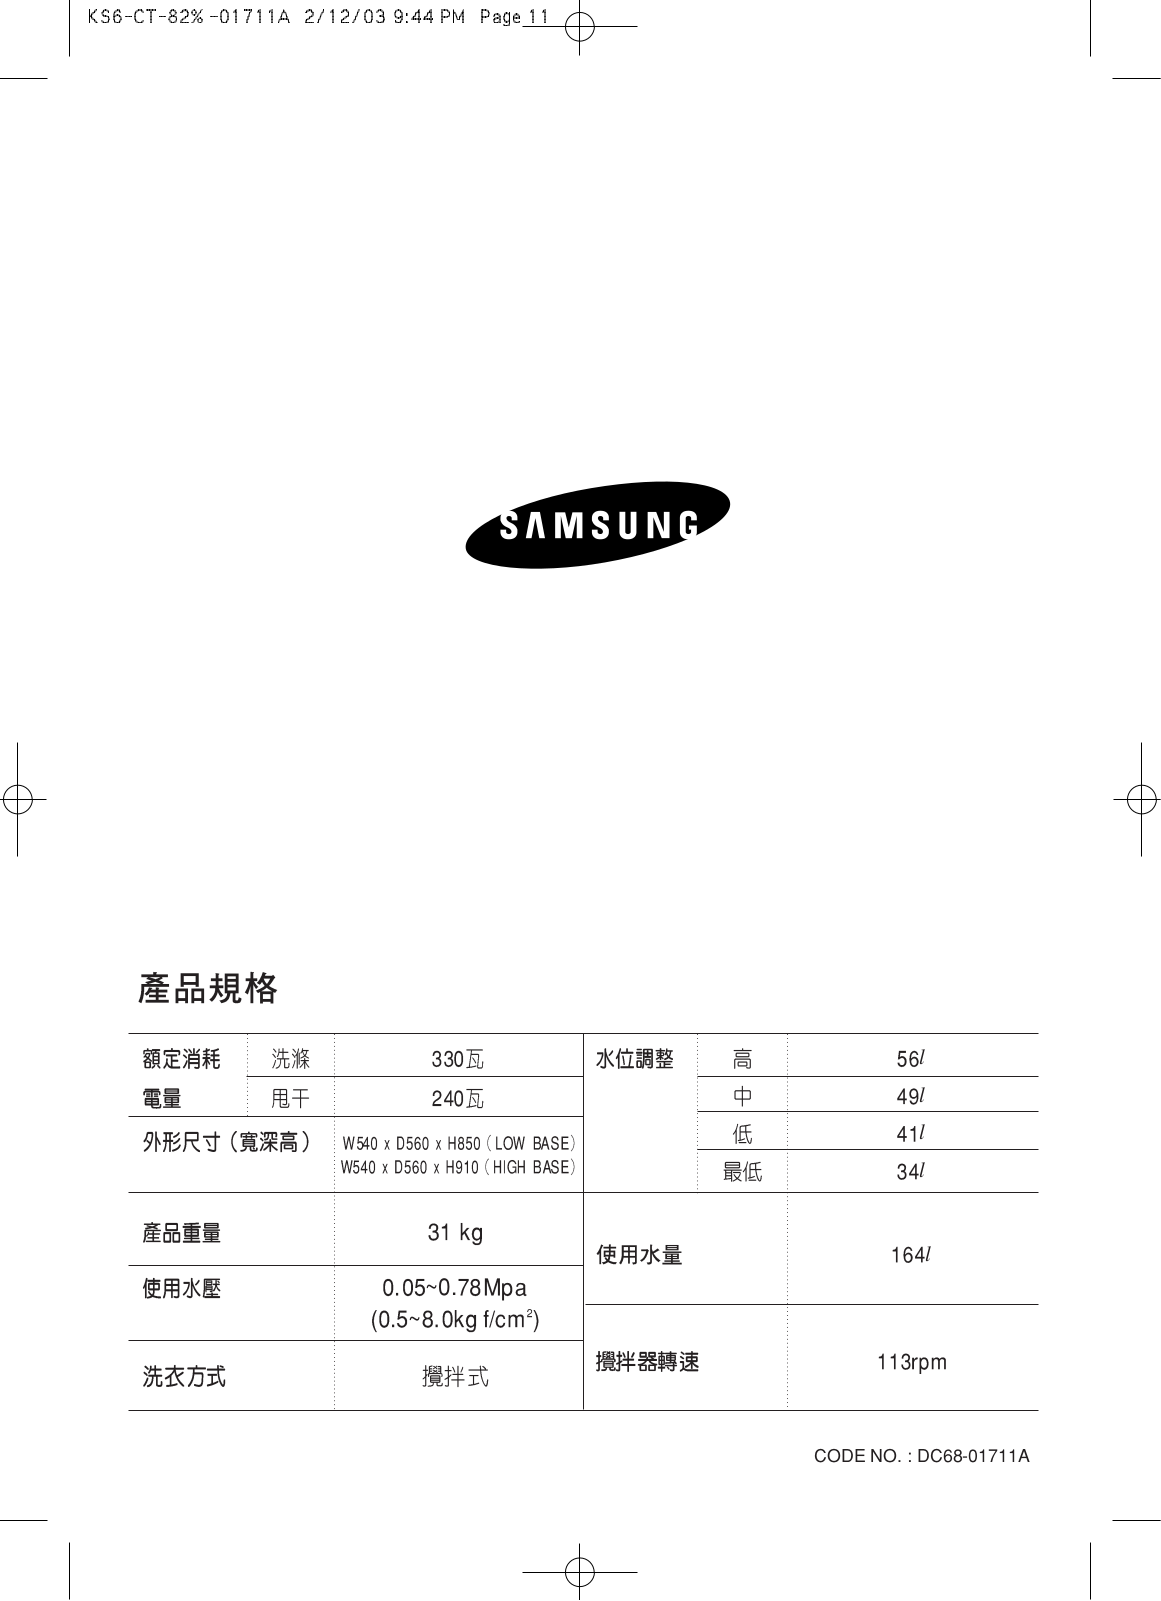 Samsung WA85K5S, WA85K5P, WA85K5, WA75K5, WA75B5S User Manual